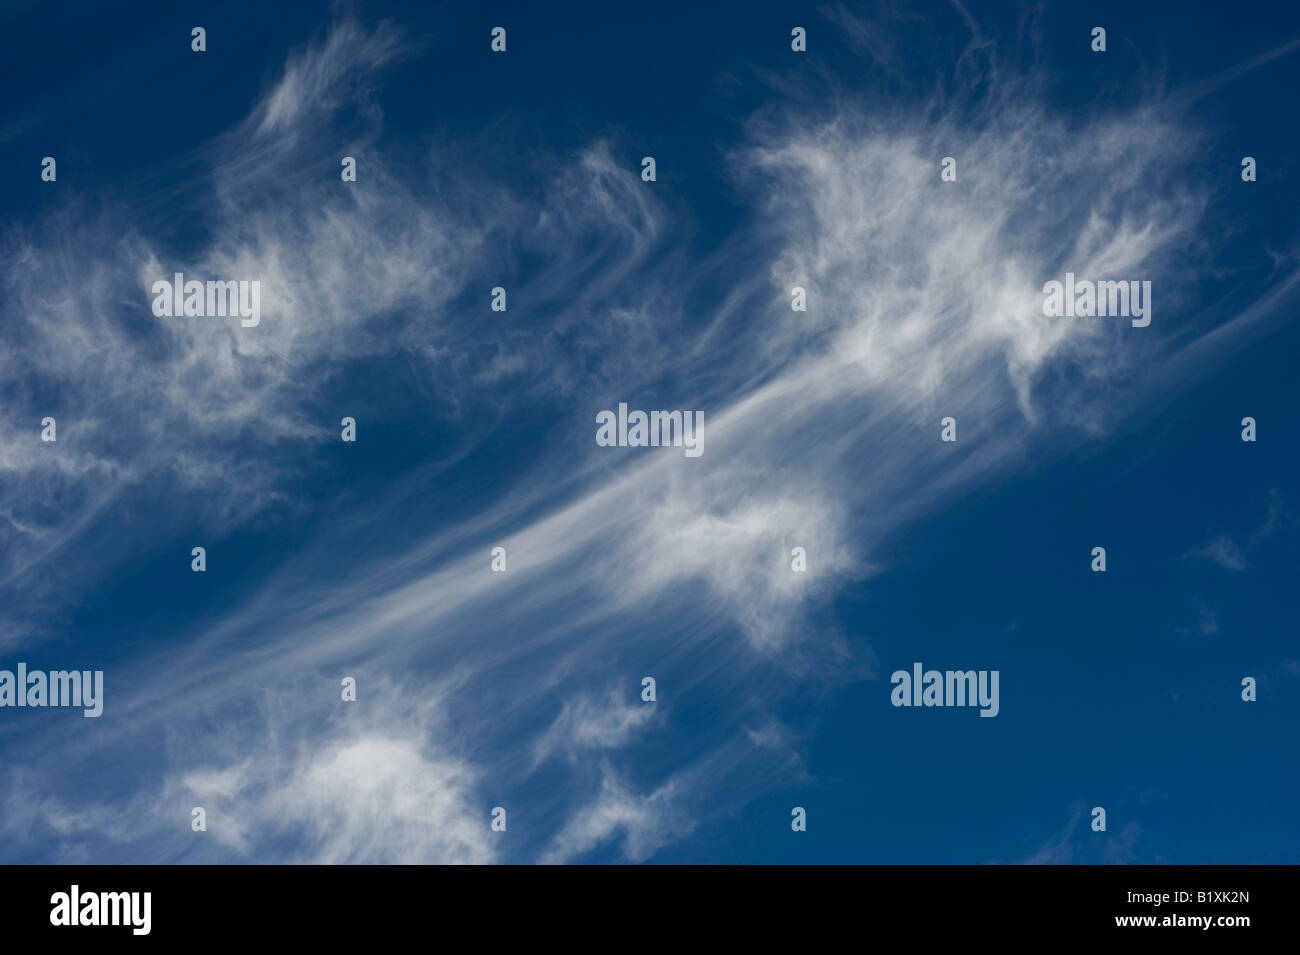 Cirrus Clouds in a bright blue sky in Scotland Stock Photo